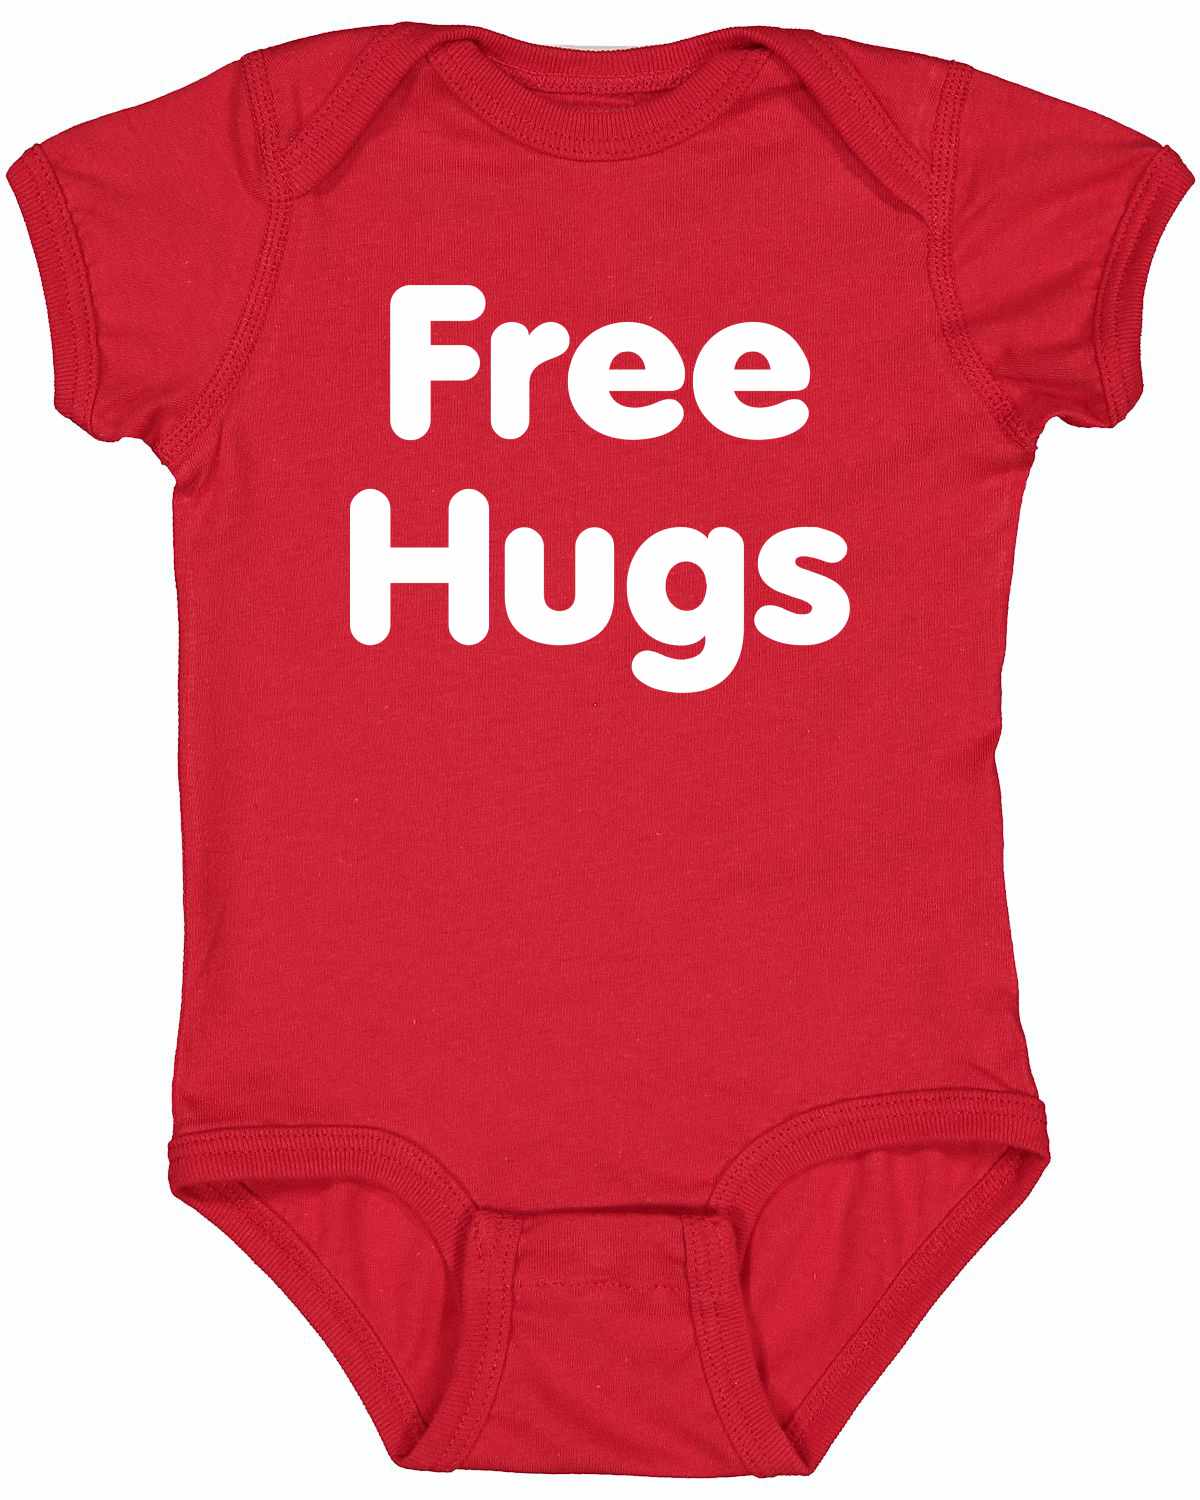 FREE HUGS on Infant BodySuit (#572-10)